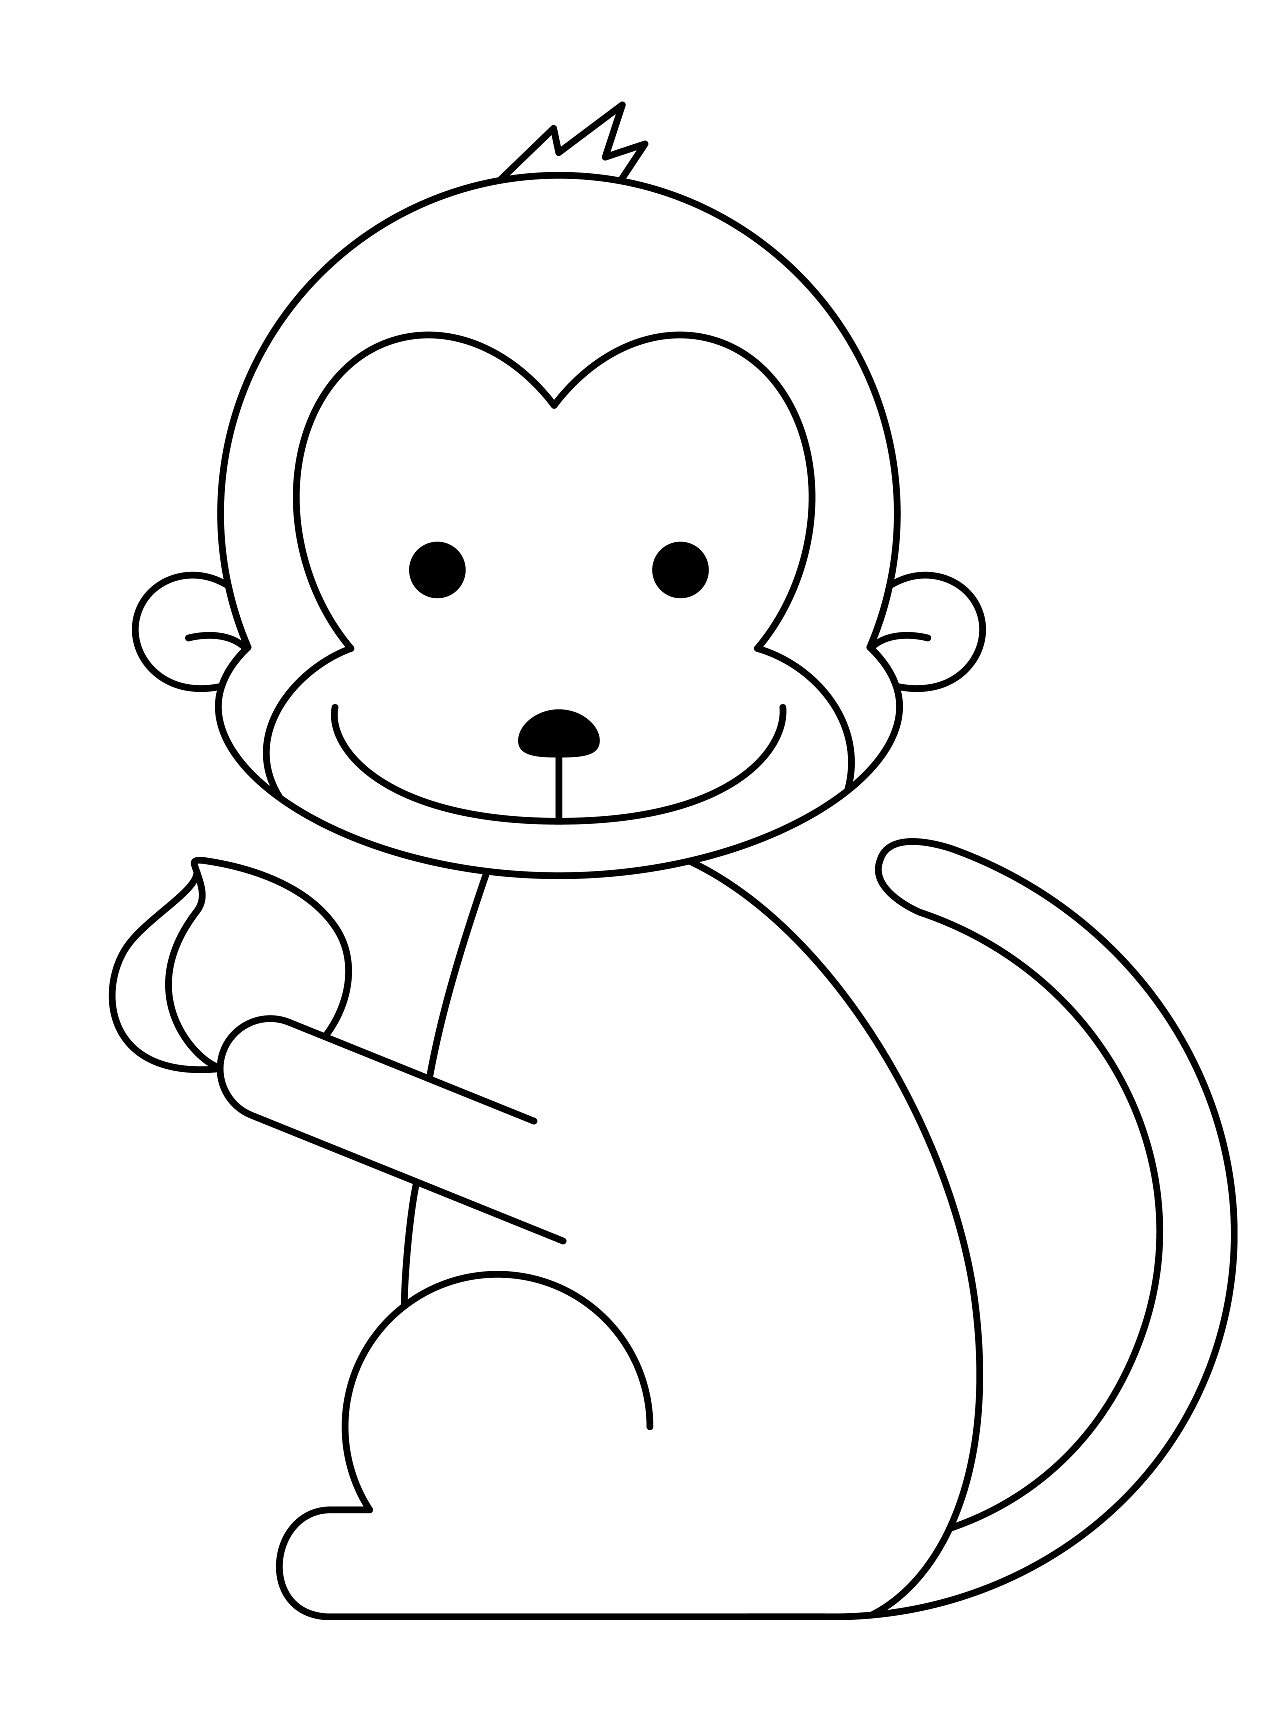 一只猴子简笔画图片